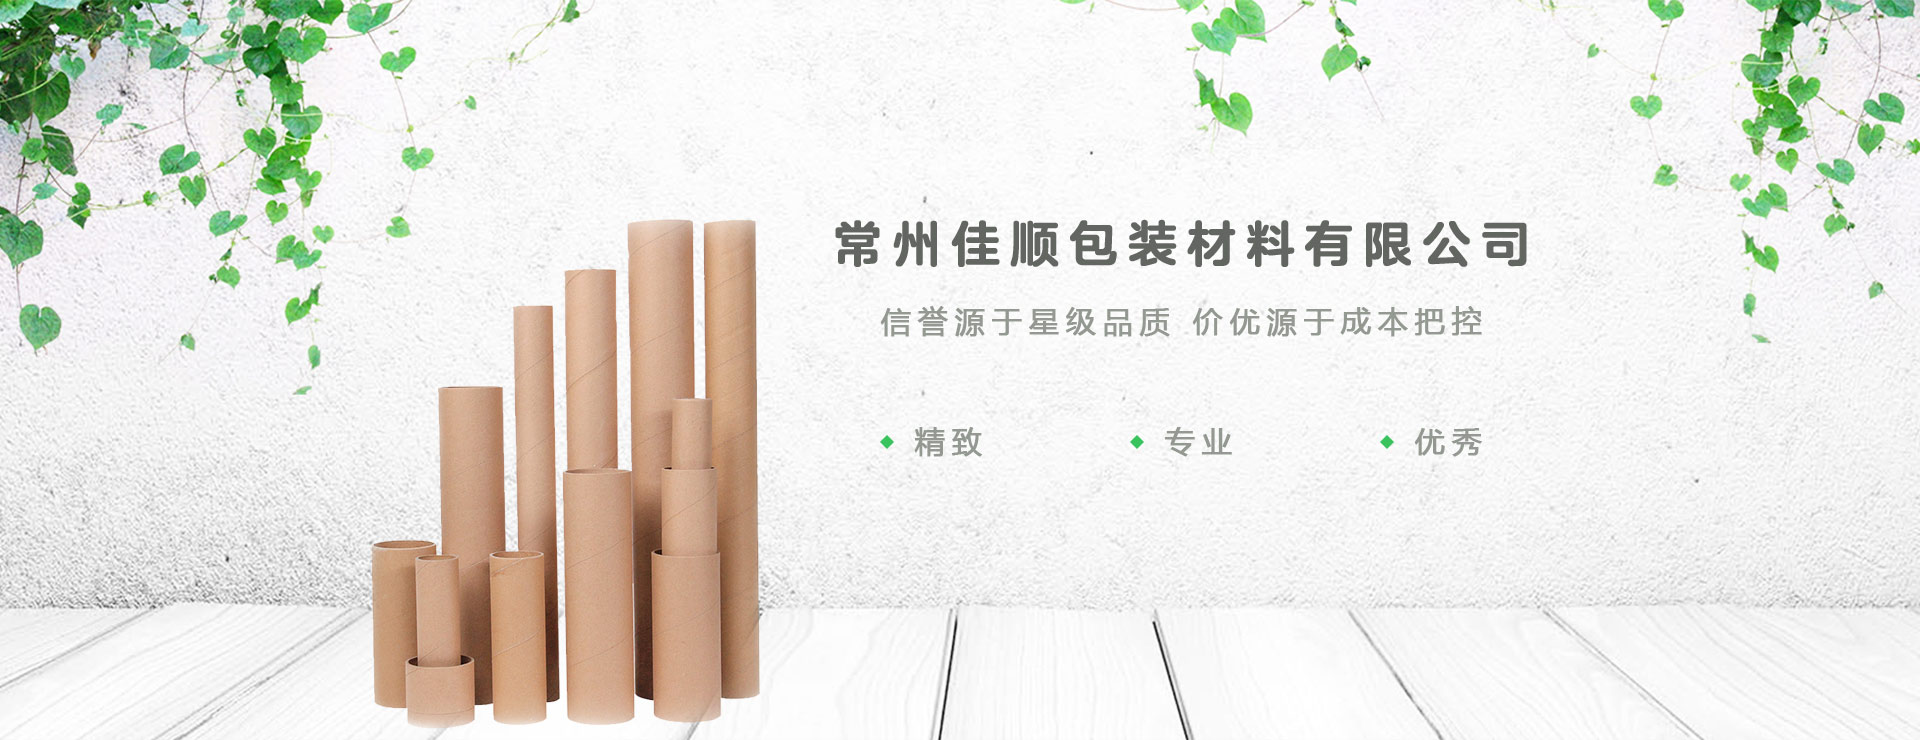 江苏工业纸管,螺旋纸管生产厂家,化纤纸管